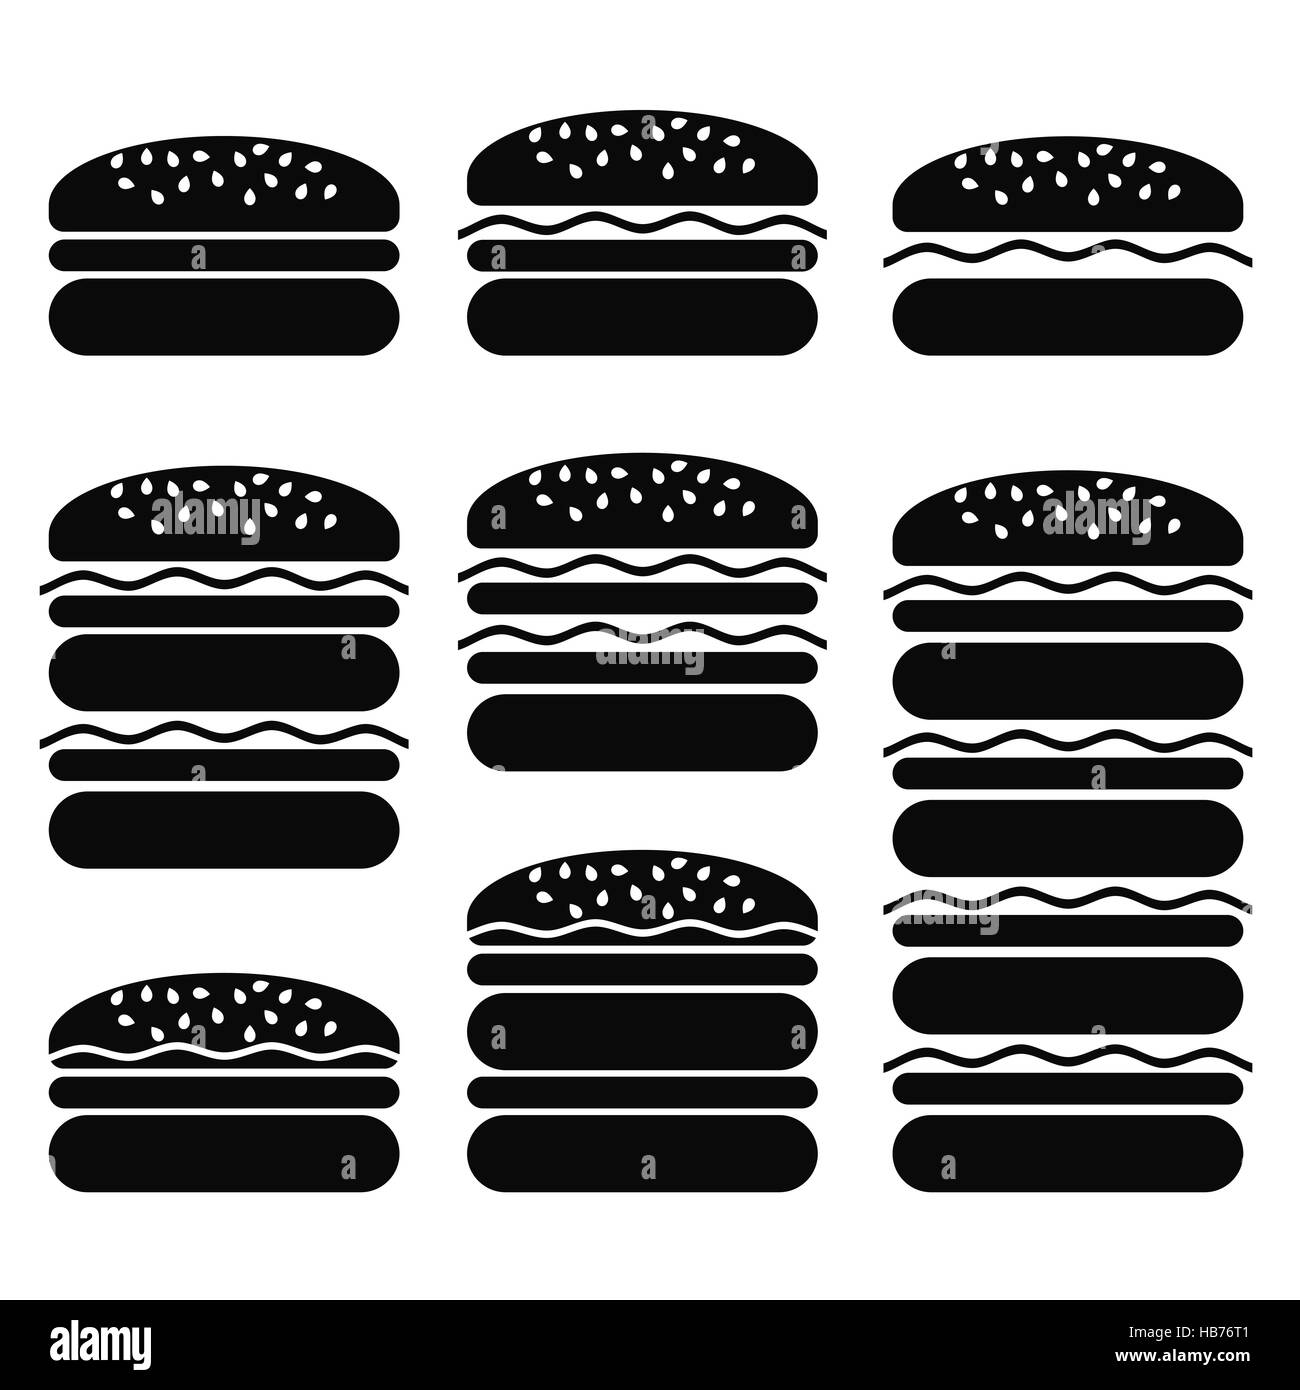 Reihe von verschiedenen Hamburger Icons Stockfoto